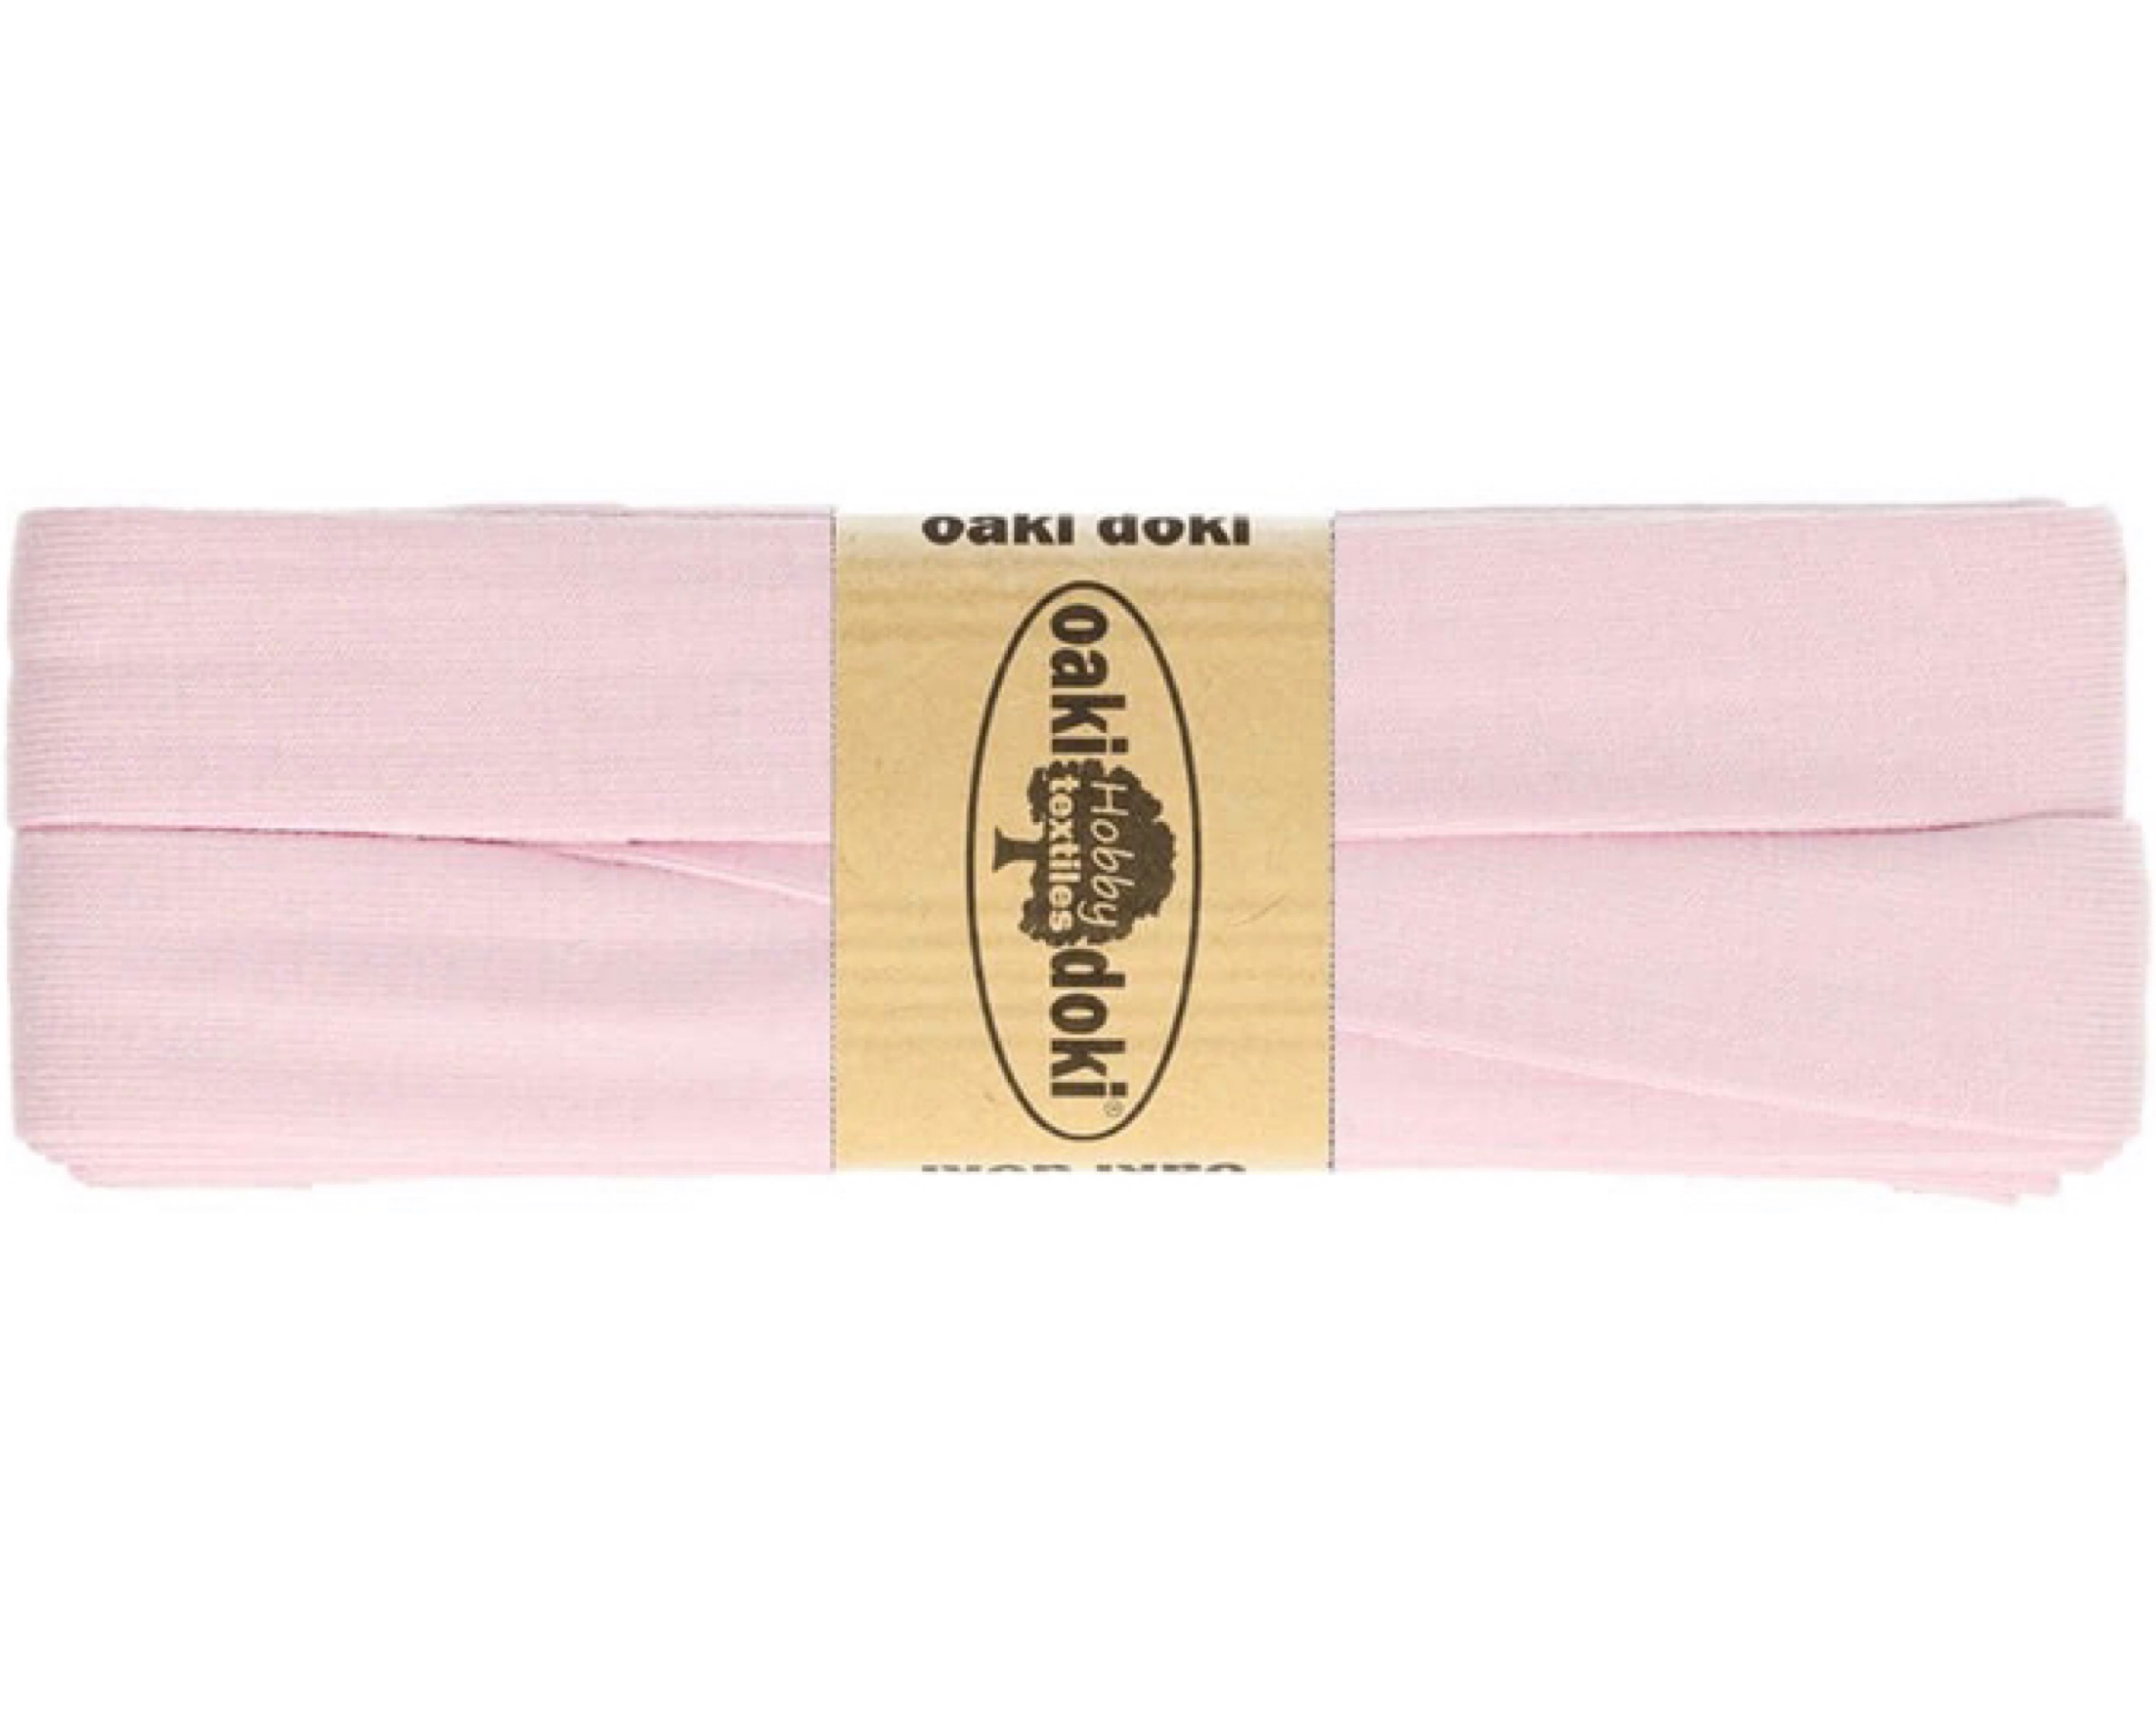 Biaisband tricot de luxe 20 mm 3m – Nr.011 lichtroze